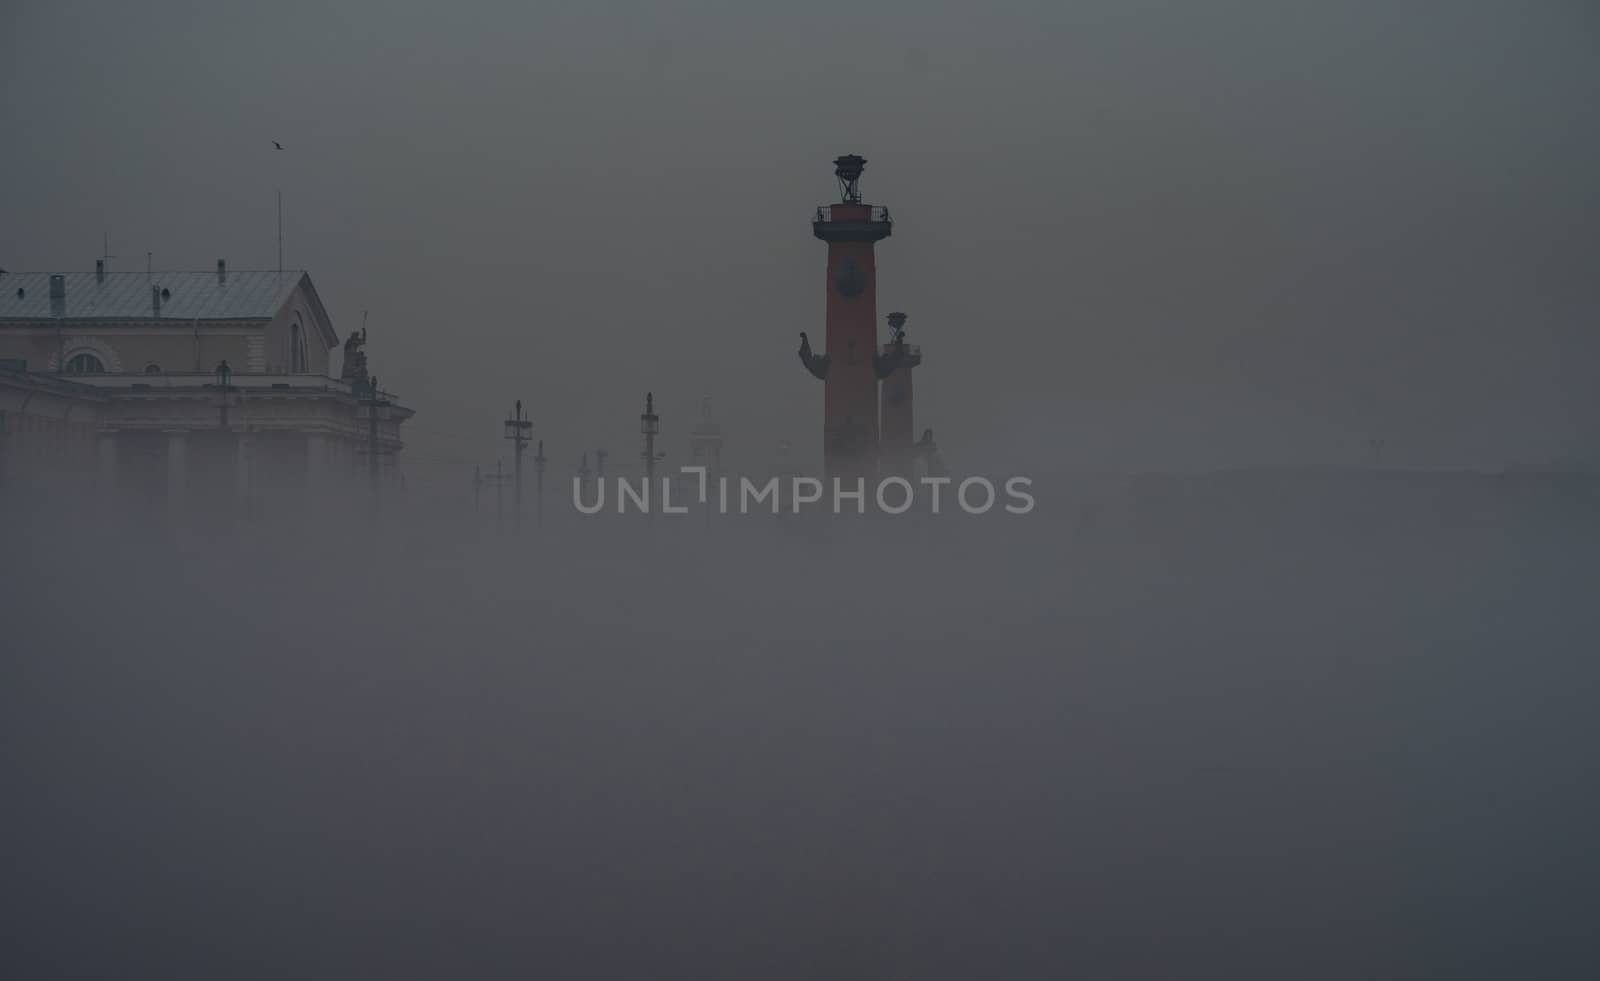 Fog over the Neva river in St. Petersburg.